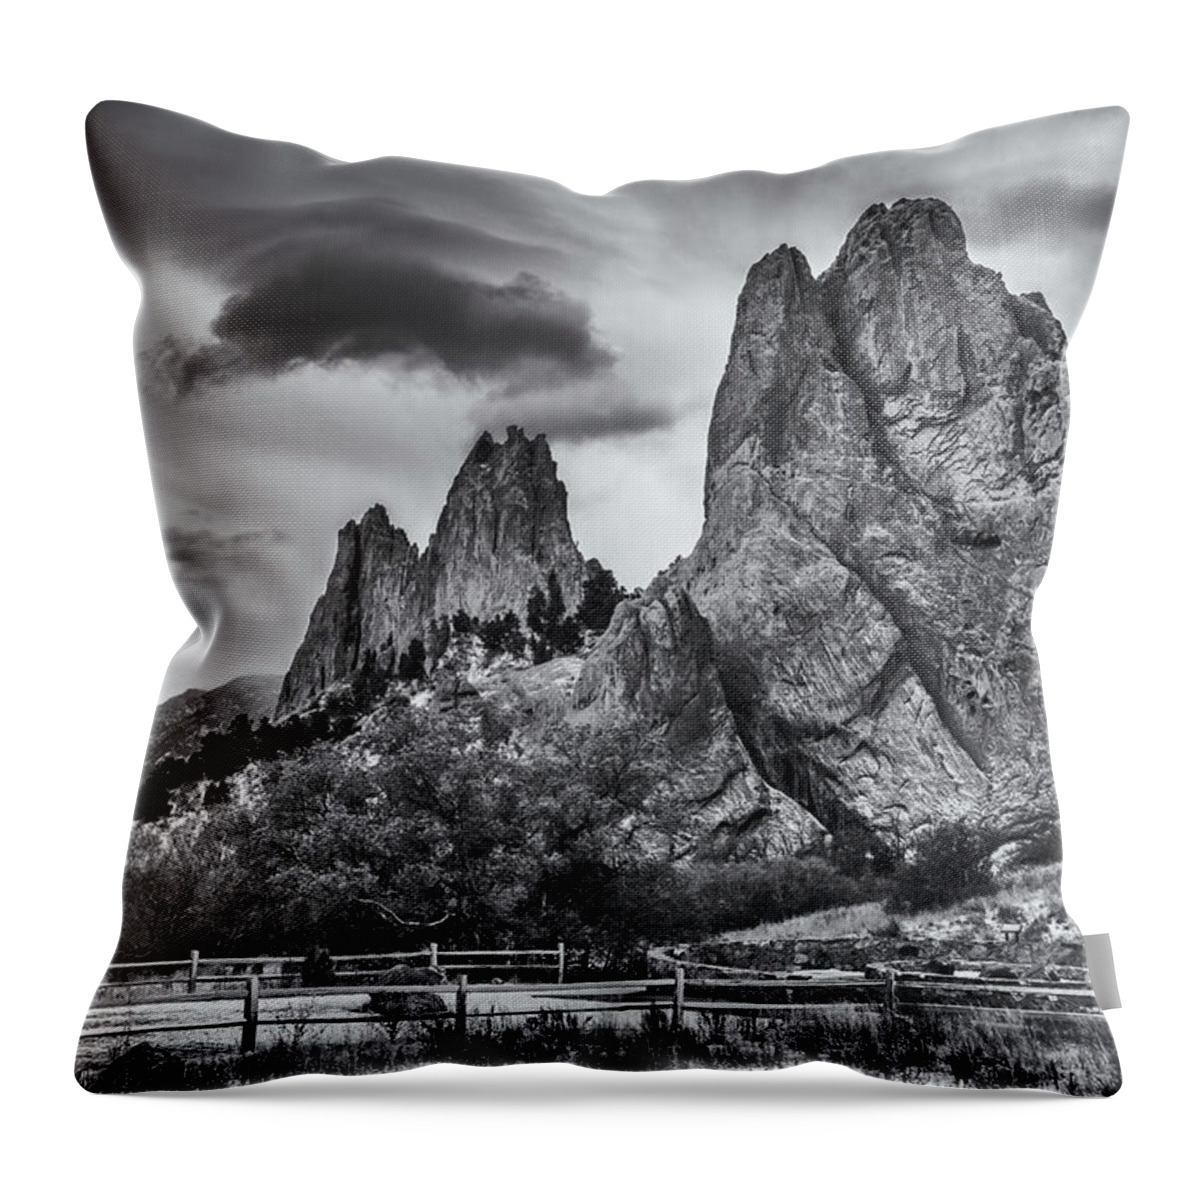 Colorado Throw Pillow featuring the photograph Garden Storm by Darren White